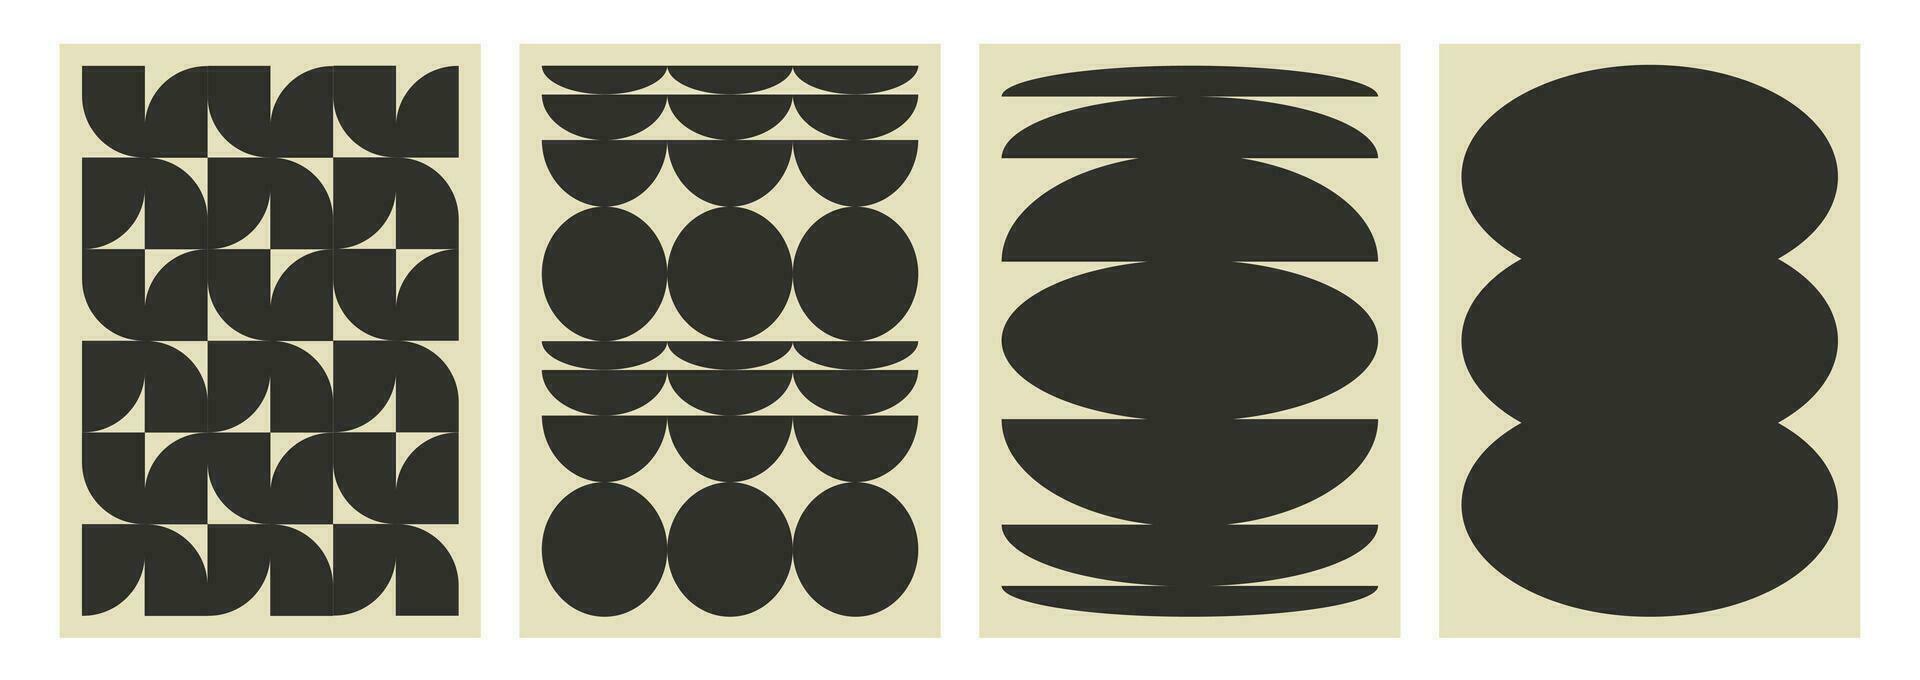 vektor uppsättning av abstrakt svartvit affischer. bakgrund med geometrisk form i 90s brutalist stil. svart stil i trendig Brutal samtida